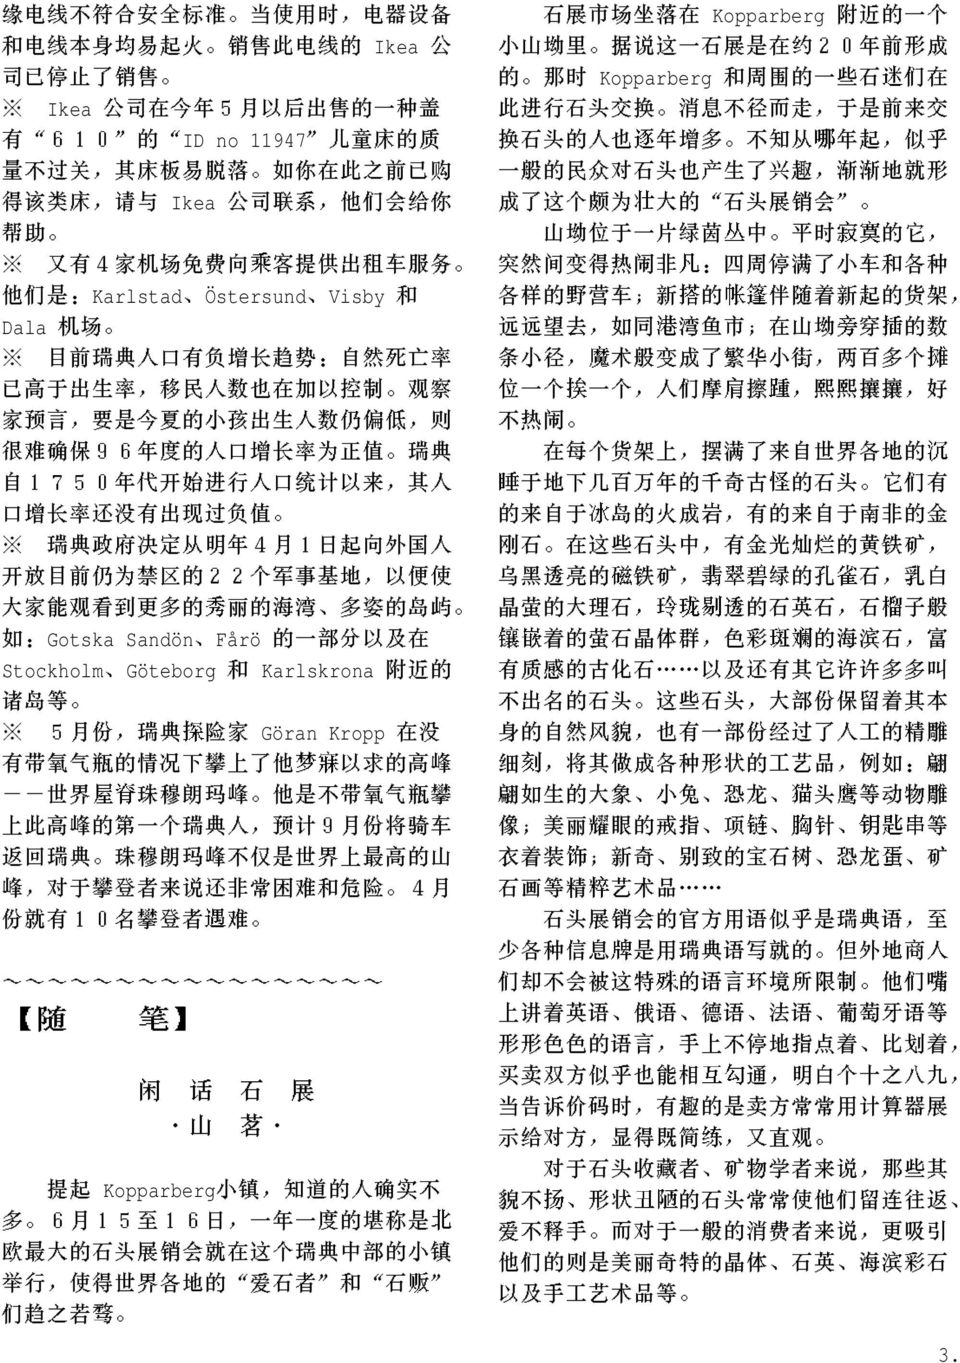 Viking Journal In Chinese Pdf Free Download